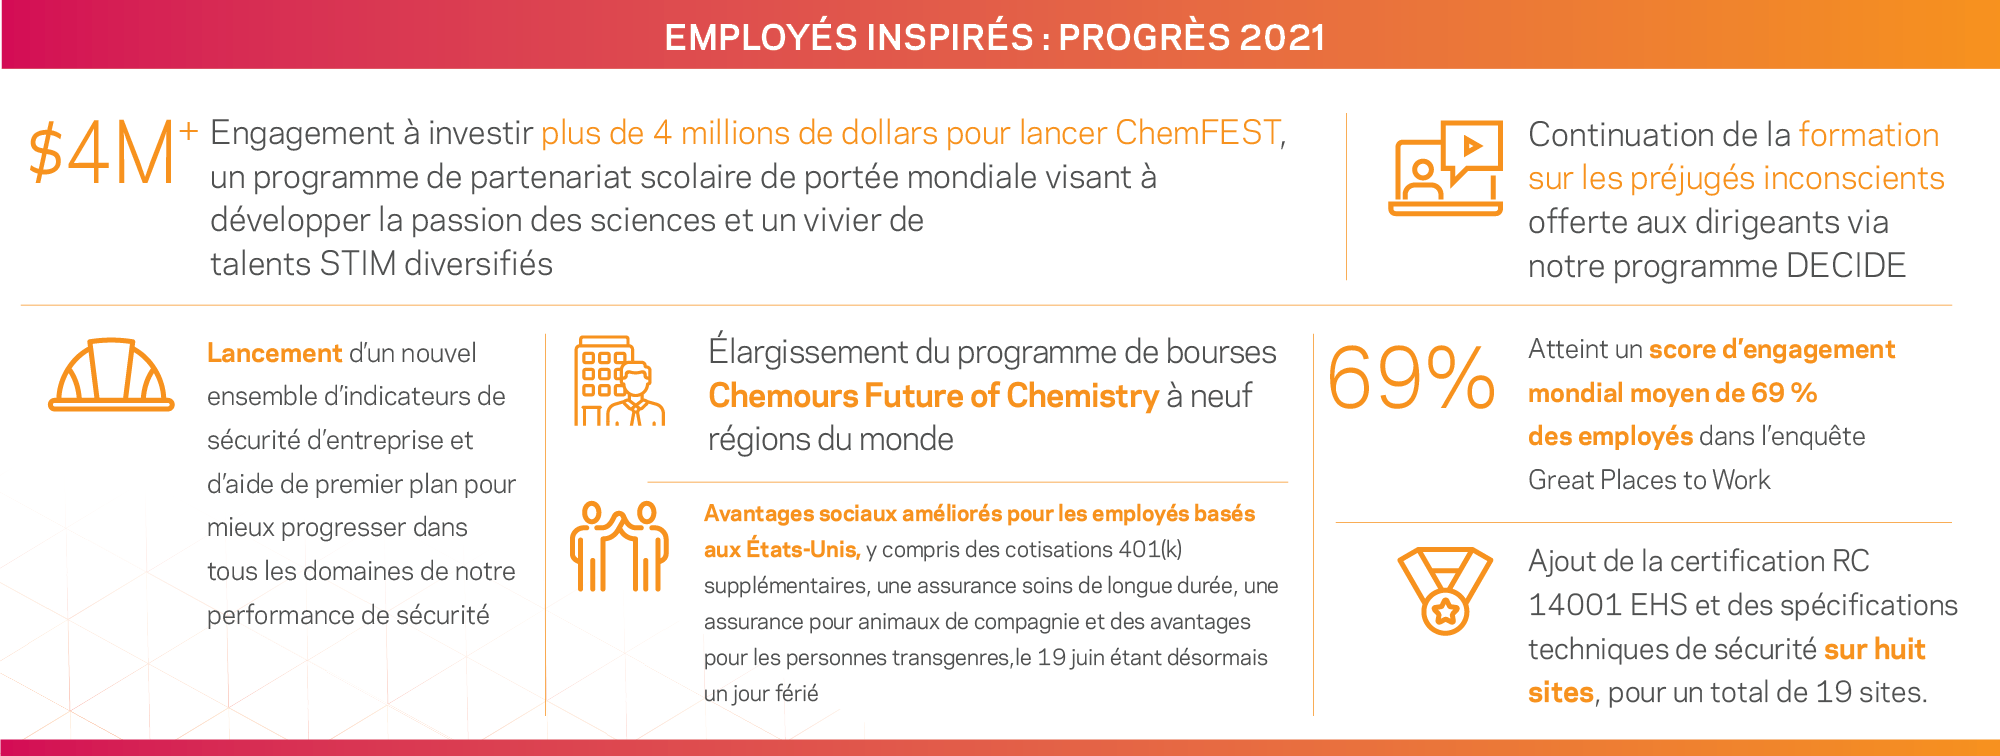 Employés inspirés : nos progrès en 2021